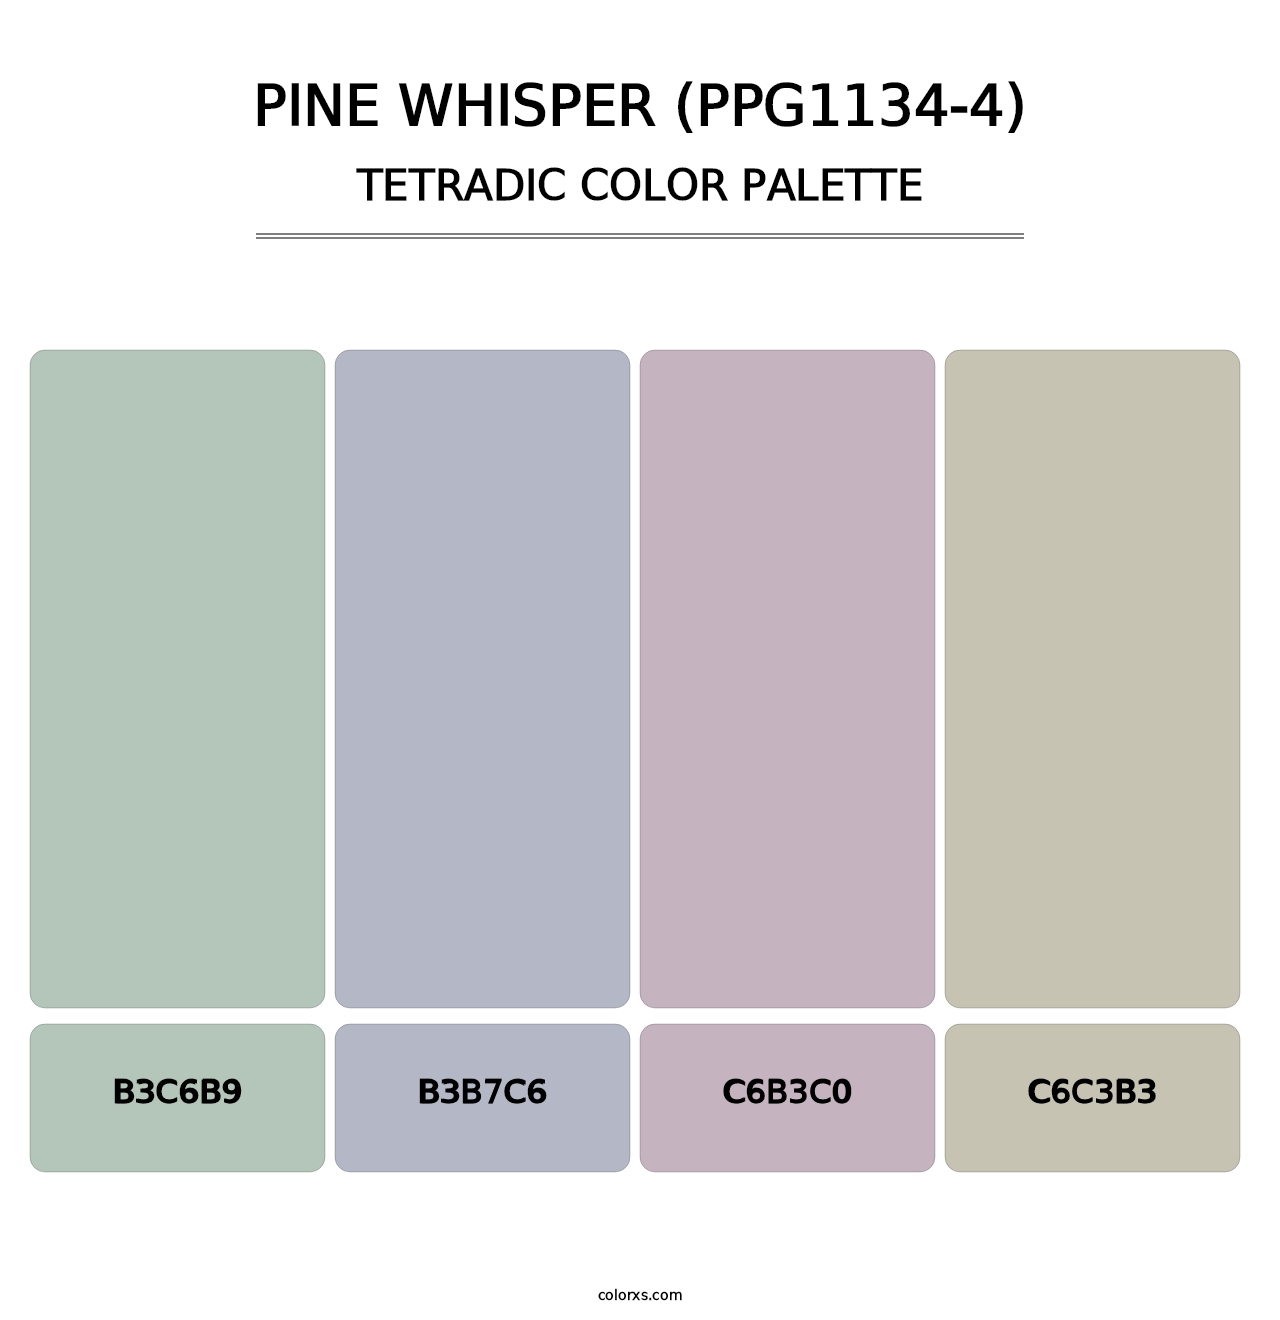 Pine Whisper (PPG1134-4) - Tetradic Color Palette